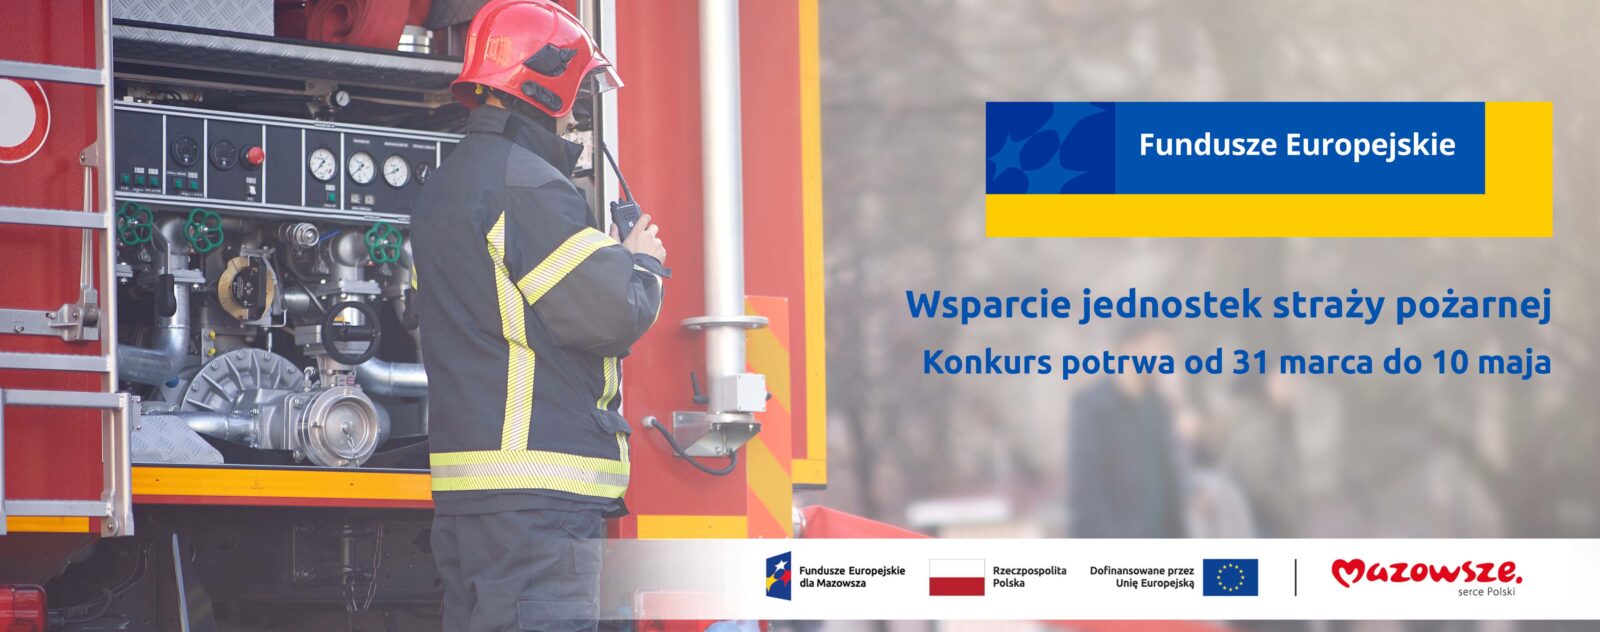 Na grafice znajduje się hasło: Wsparcie jednostek straży pożarnej. Konkurs potrwa od 31 marca do 10 maja. Obok zdjęcie strażaka na tle wozu strażackiego.